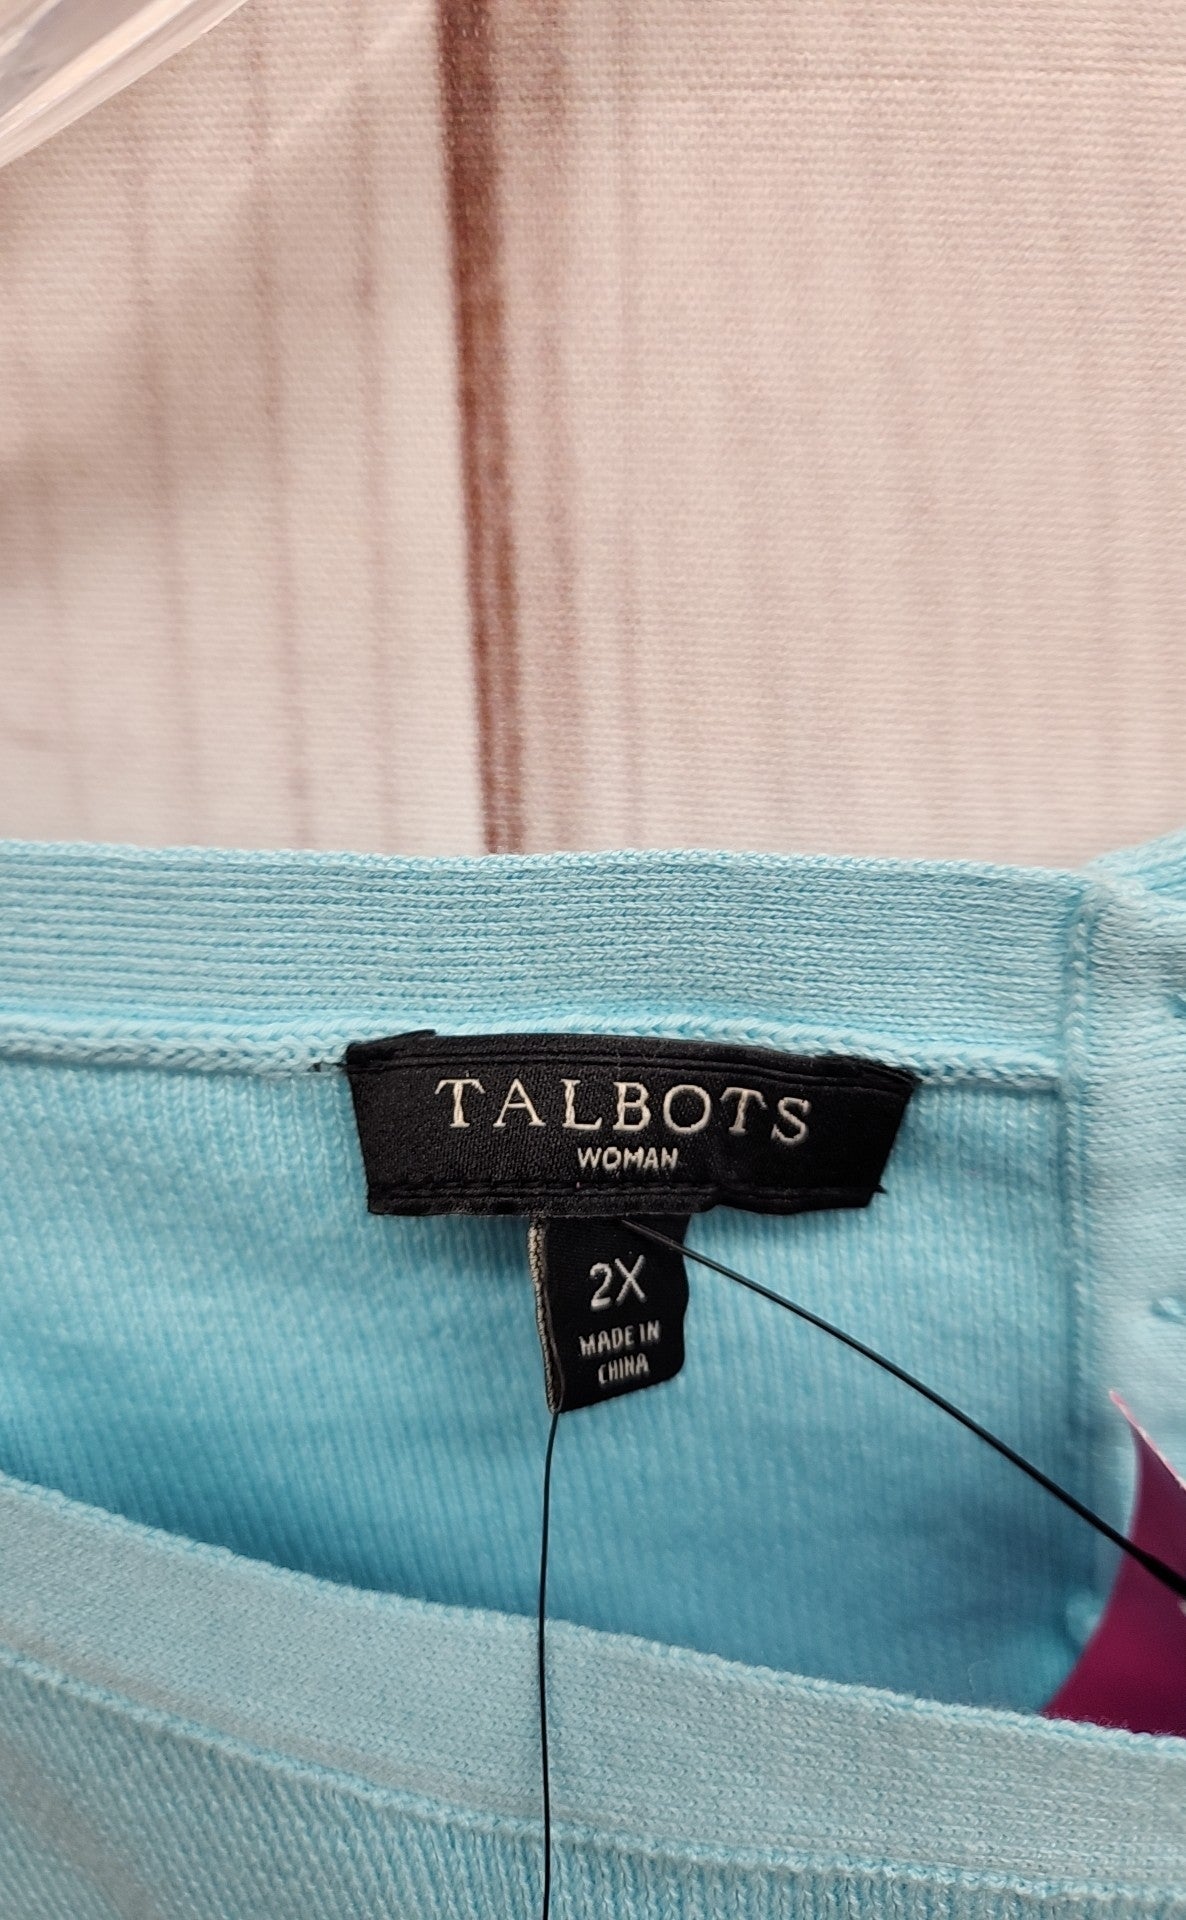 Talbots Women's Size 2X Turquoise Sleeveless Top NWT